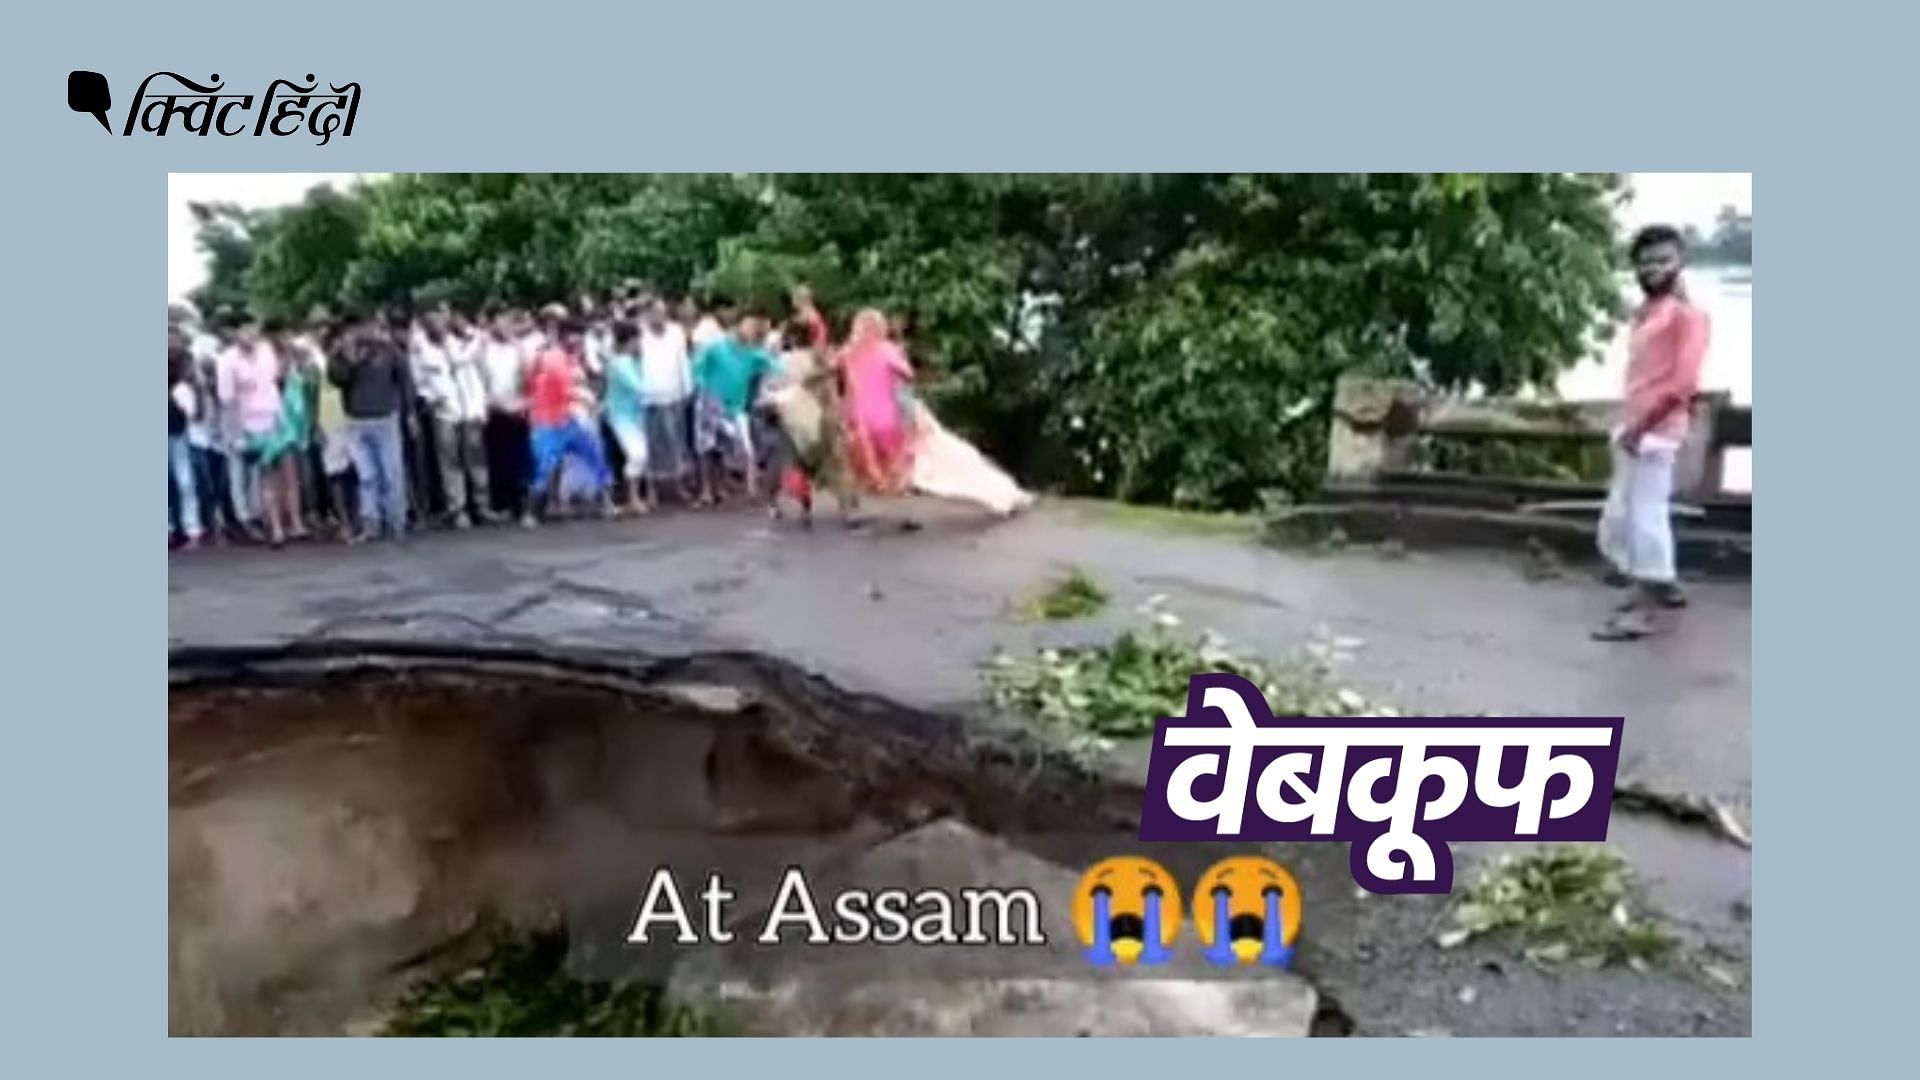 <div class="paragraphs"><p>असम नहीं बिहार का है ये वीडियो, जब 2017 में बाढ़ आई थी</p></div>